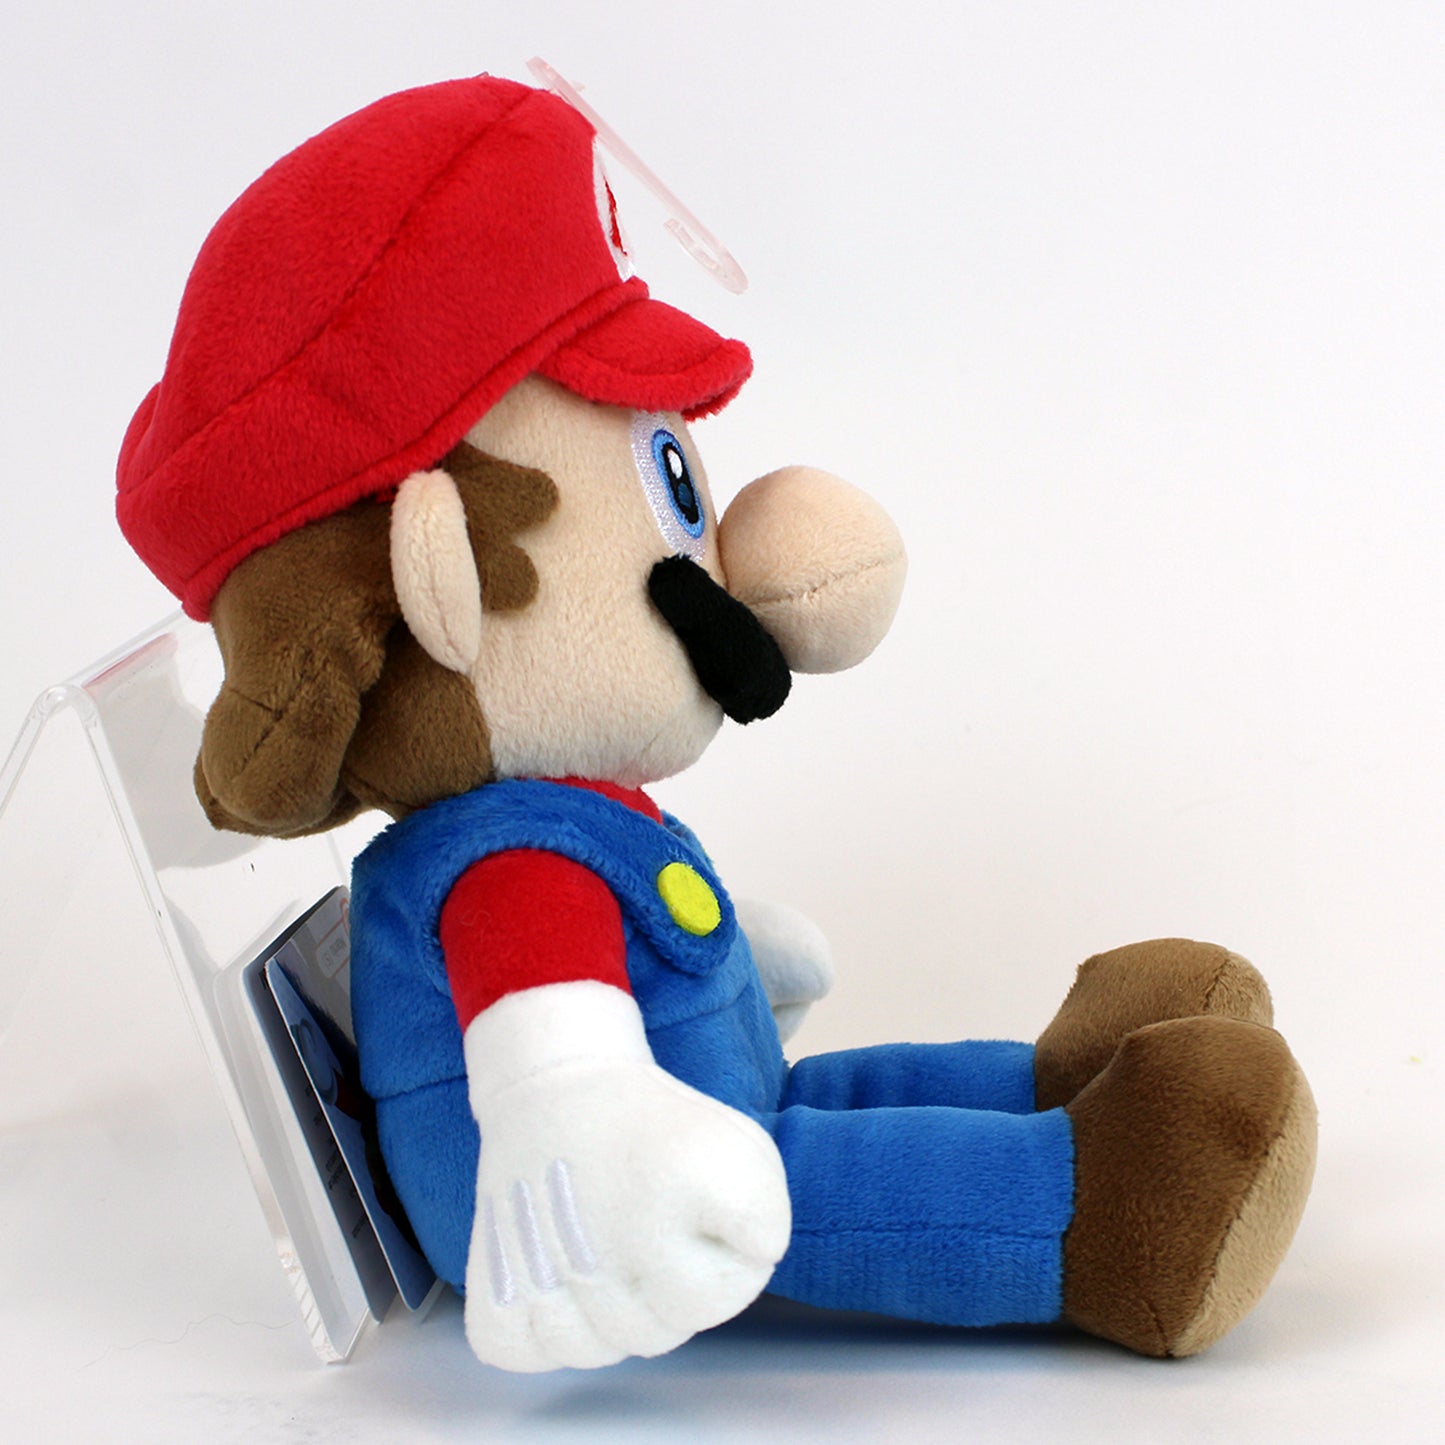 Mario Super Mario 10" Plush